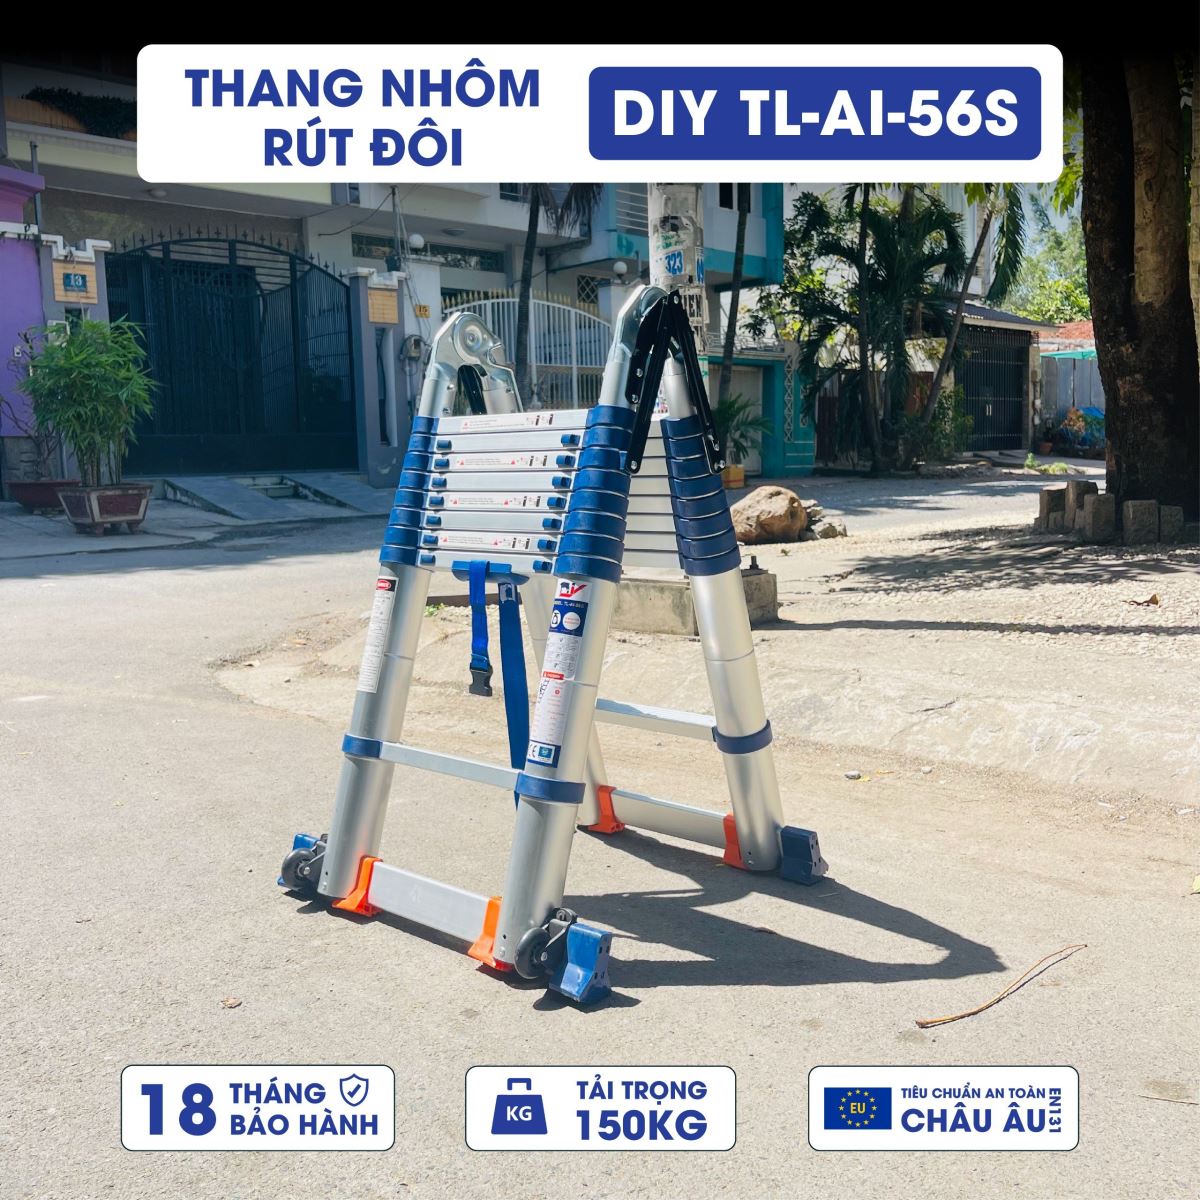 Thang nhôm rút đôi DIY TL-AI-56S